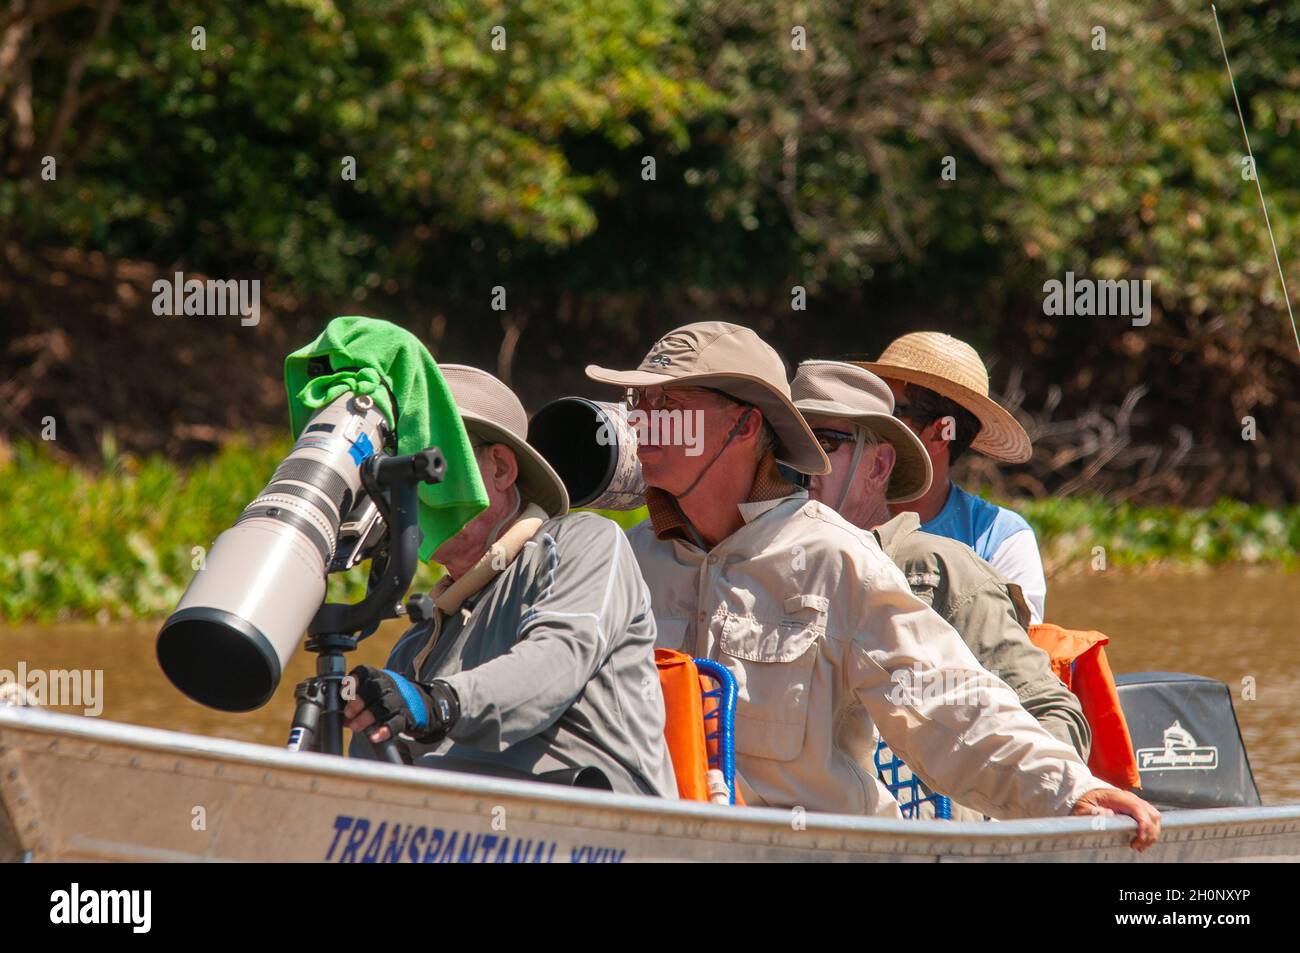 Touristen auf Booten auf der Suche nach Jaguaren auf dem Fluss Tres Irmãos, Pantanal, Mato Grosso, Brasilien Stockfoto